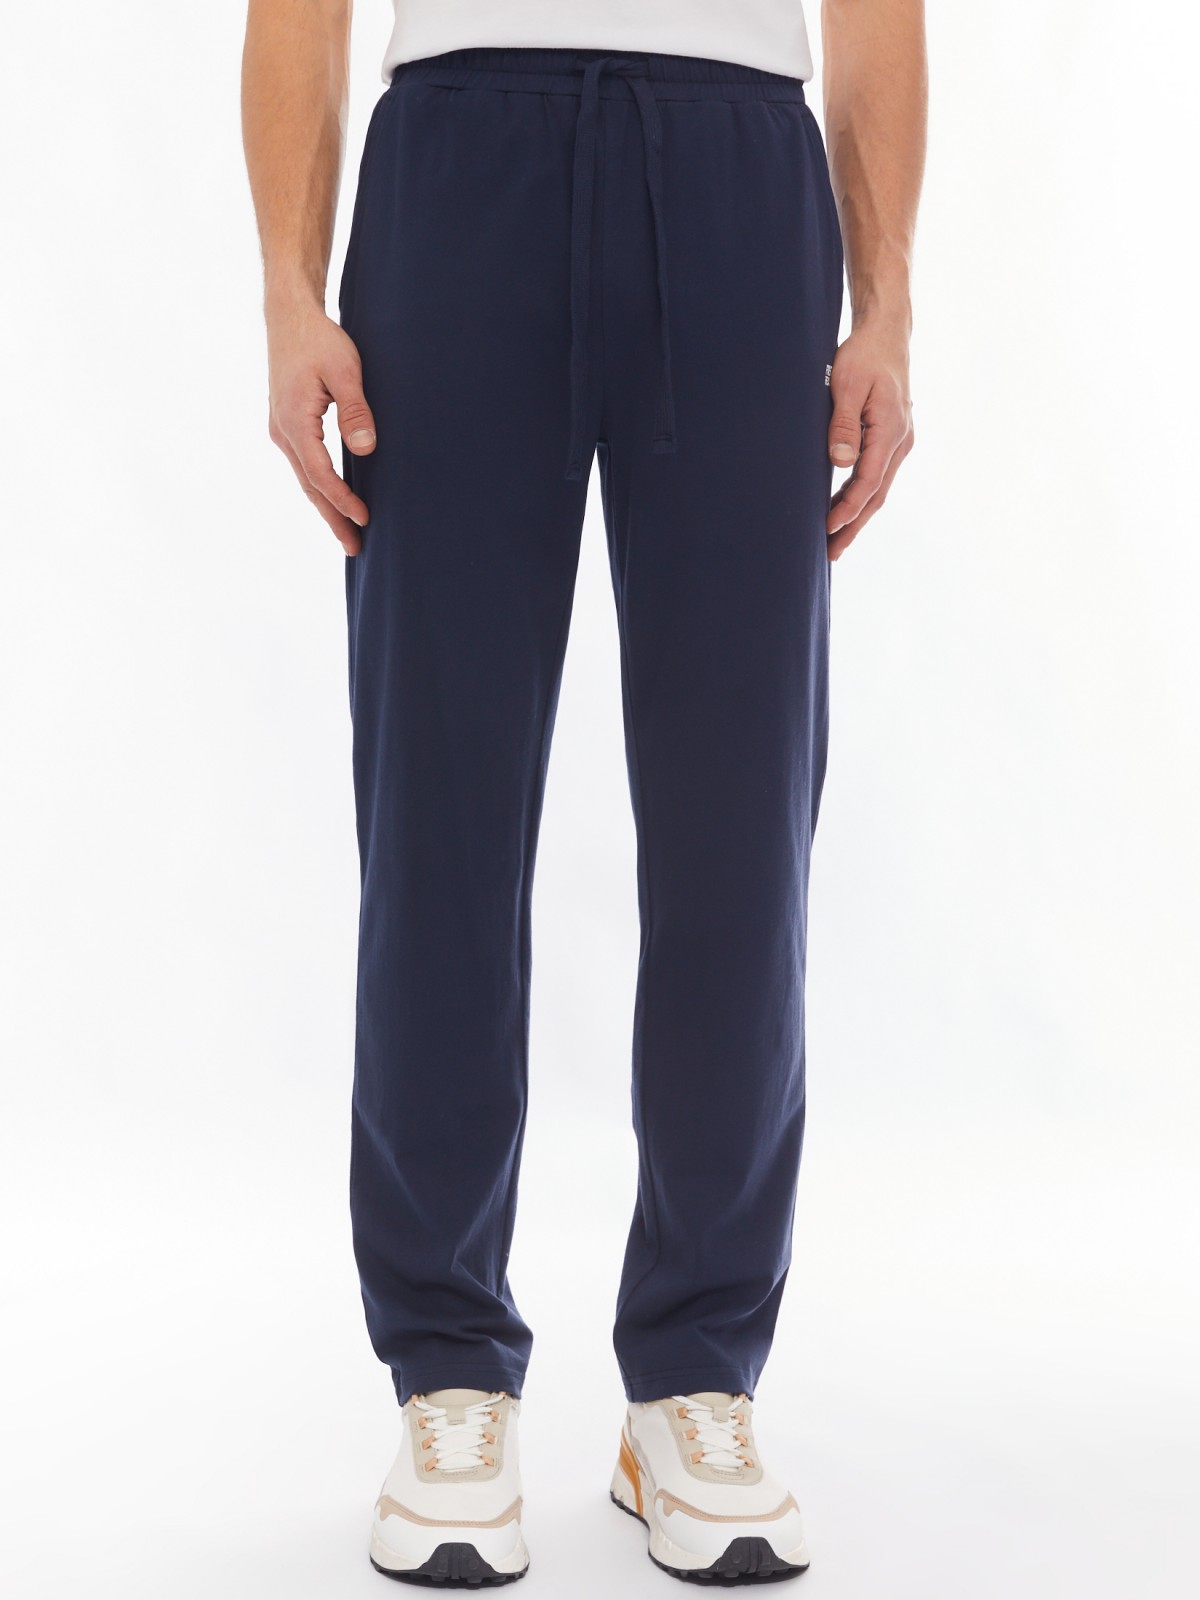 Трикотажные брюки из хлопка в спортивном стиле zolla 014137675012, цвет синий, размер S - фото 2